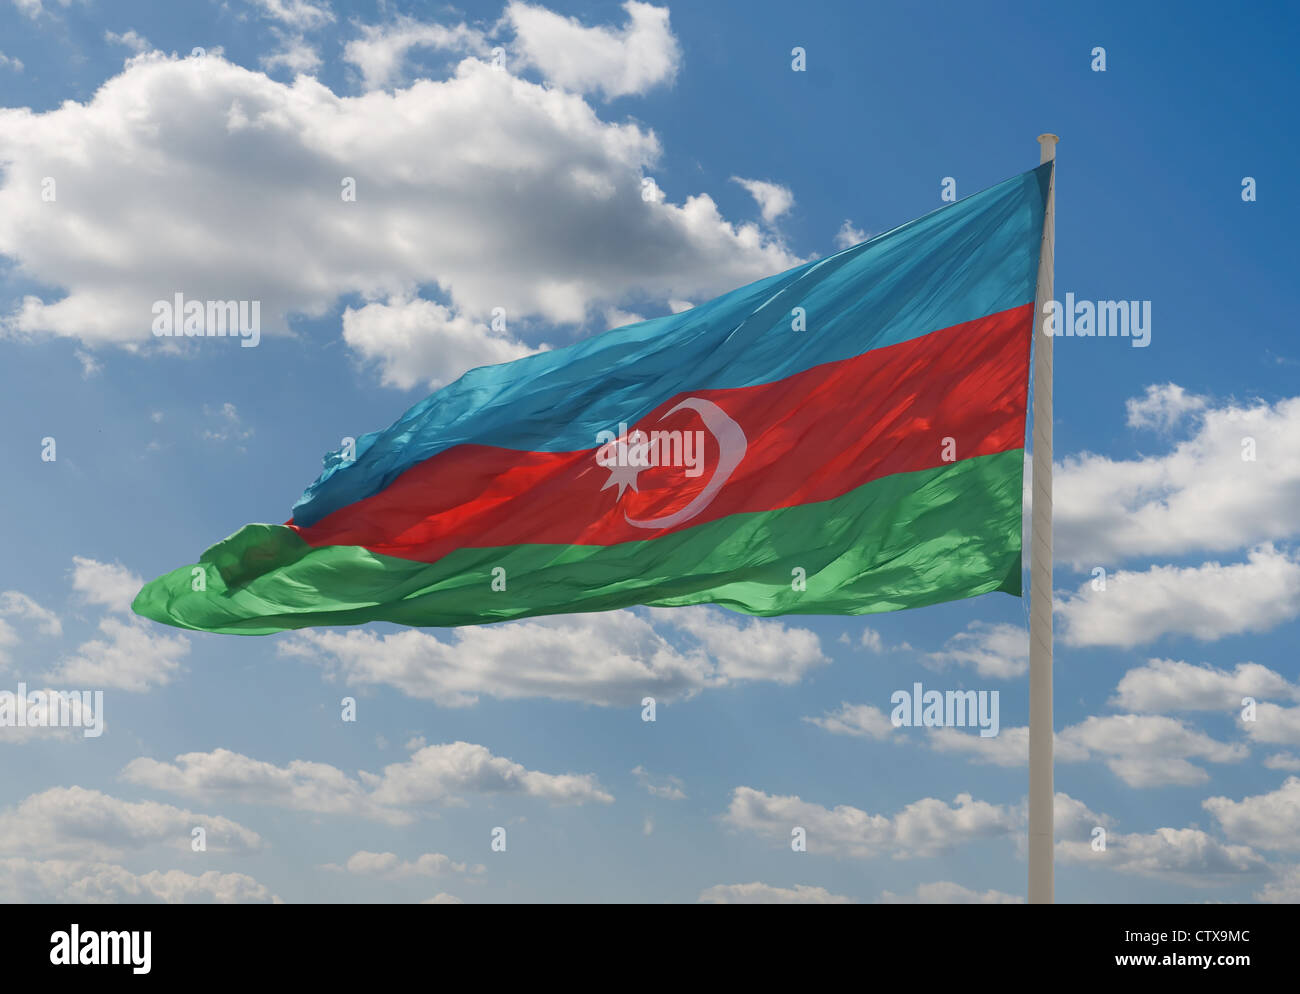 Drapeau national de l'Azerbaïdjan contre le ciel bleu Banque D'Images